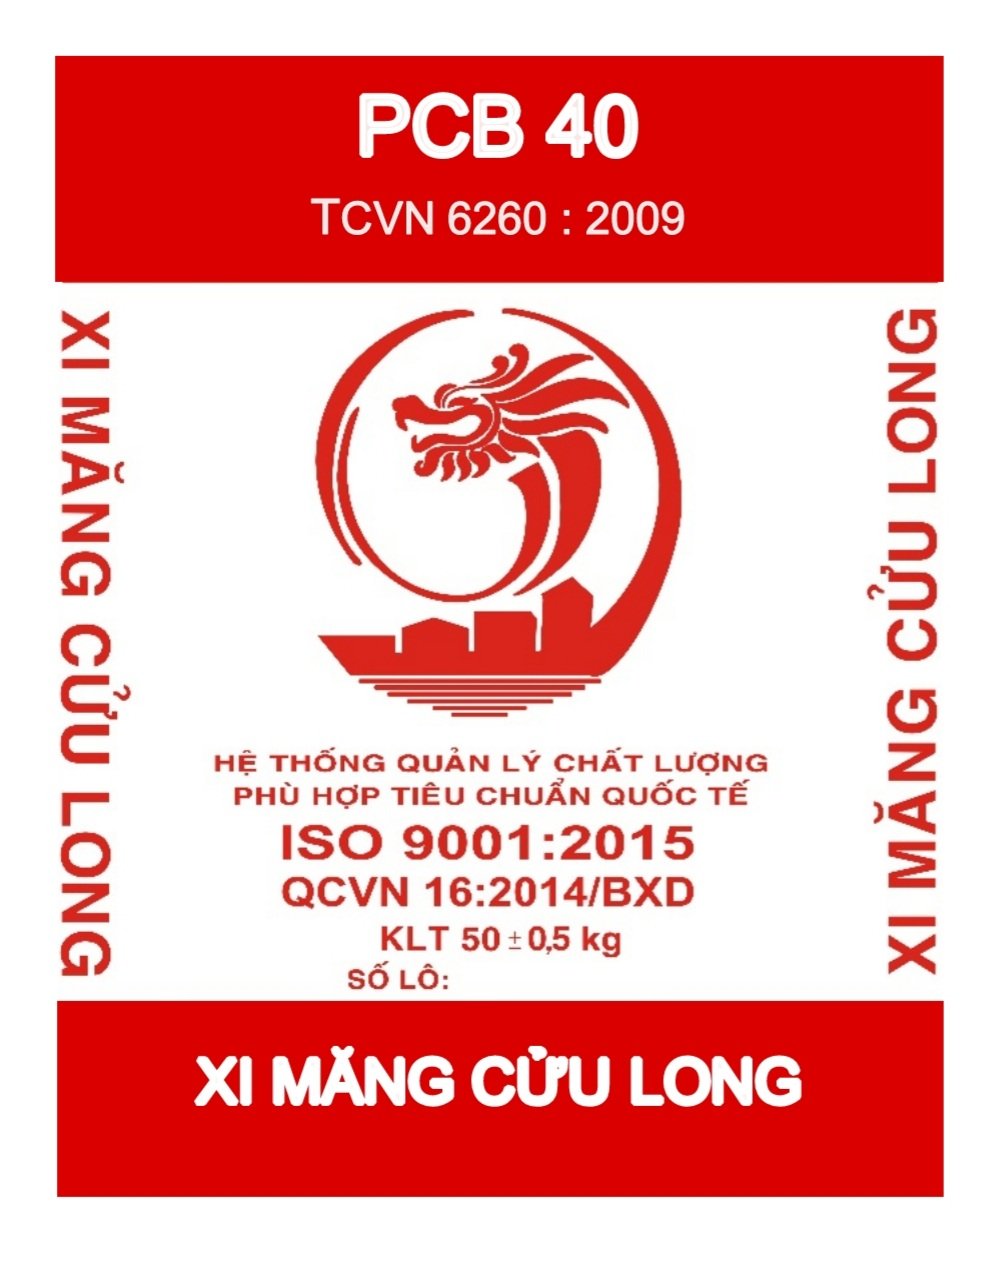 Xi măng Cửu Long PCB40